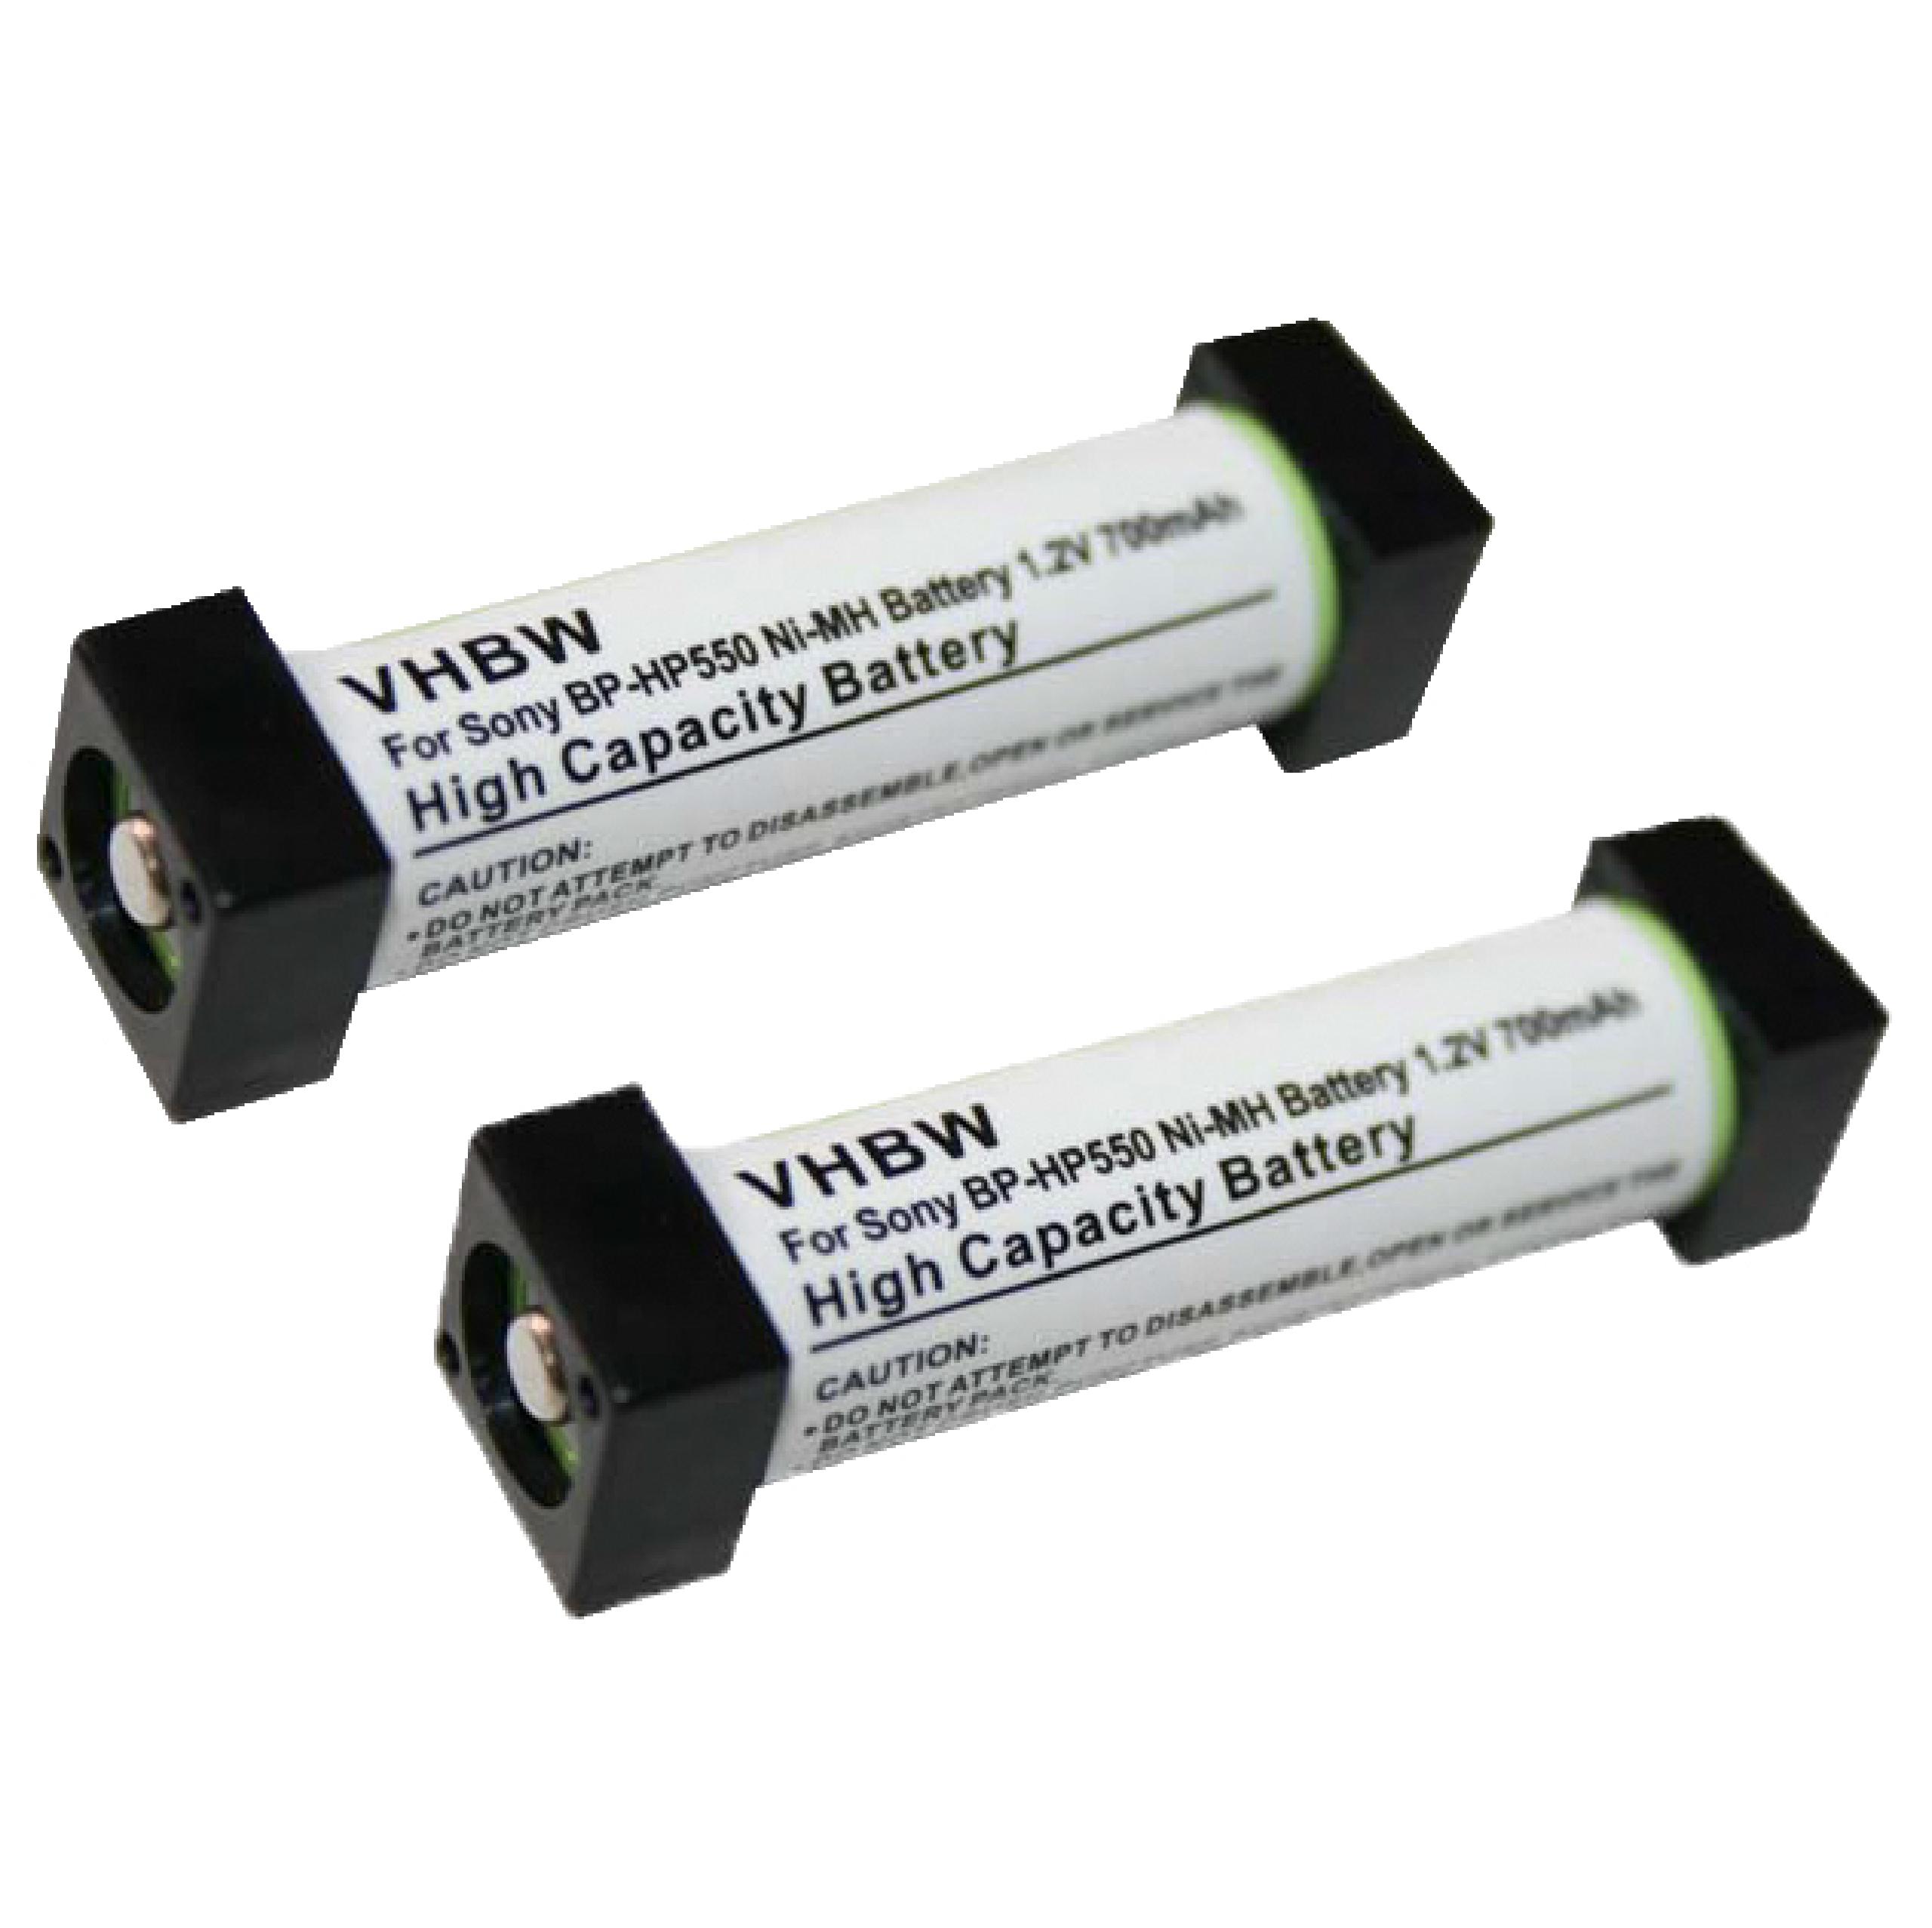 Batteries (2x pièces) remplace Sony BP-HP550, 1-756-316-22, 1-756-316-21 pour casque audio - 700mAh 1,2V NiMH